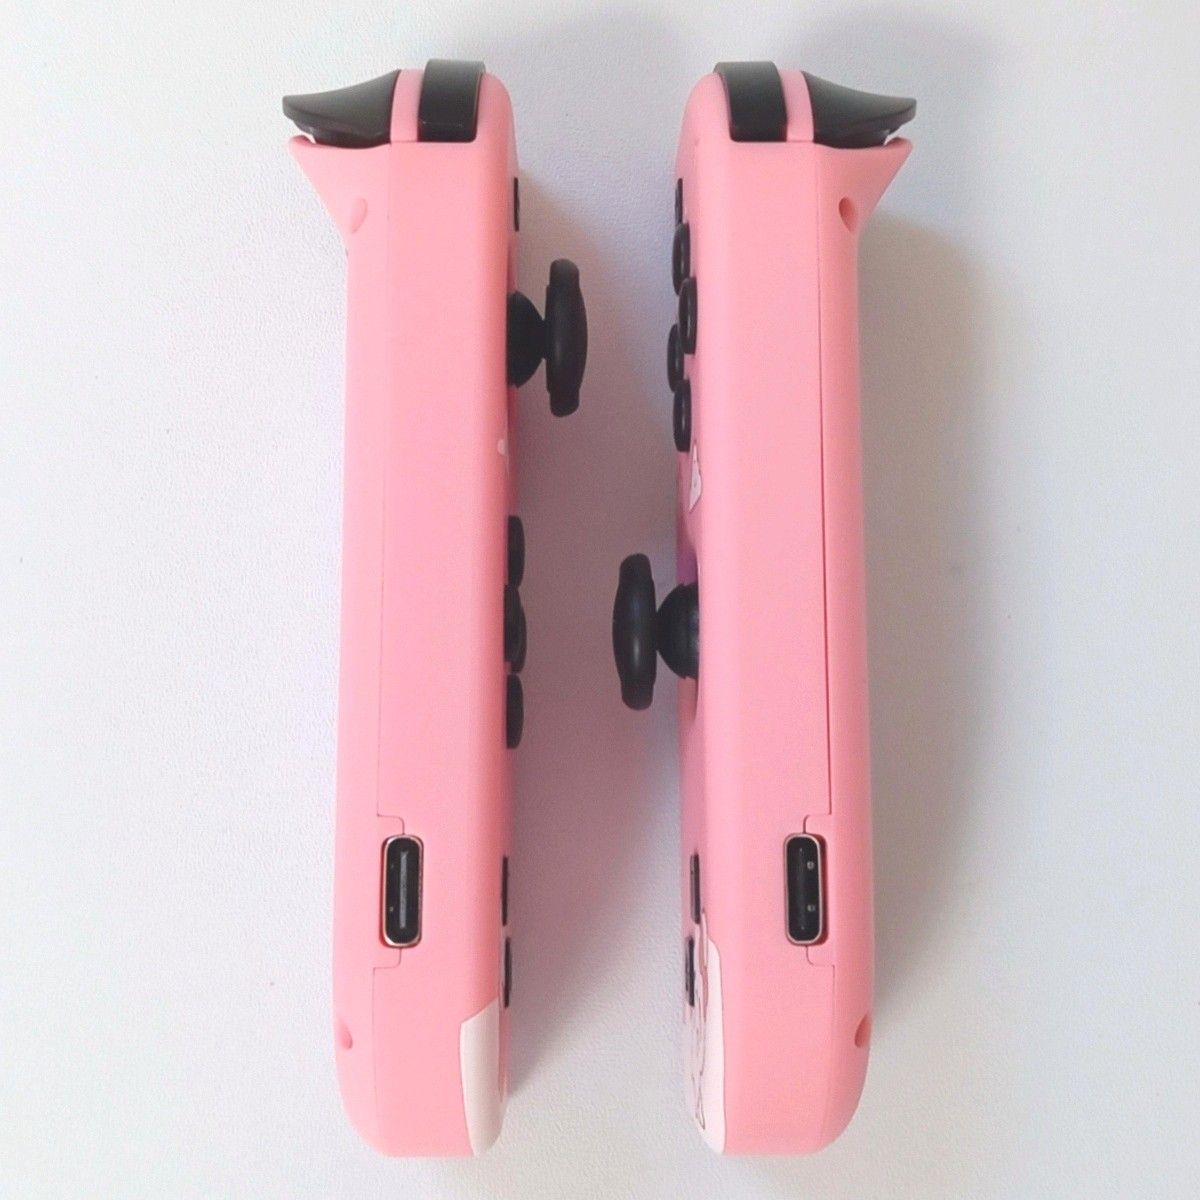 【新品】ジョイコン 連射 充電口付 Joy-Con ピンク いちご うさぎ